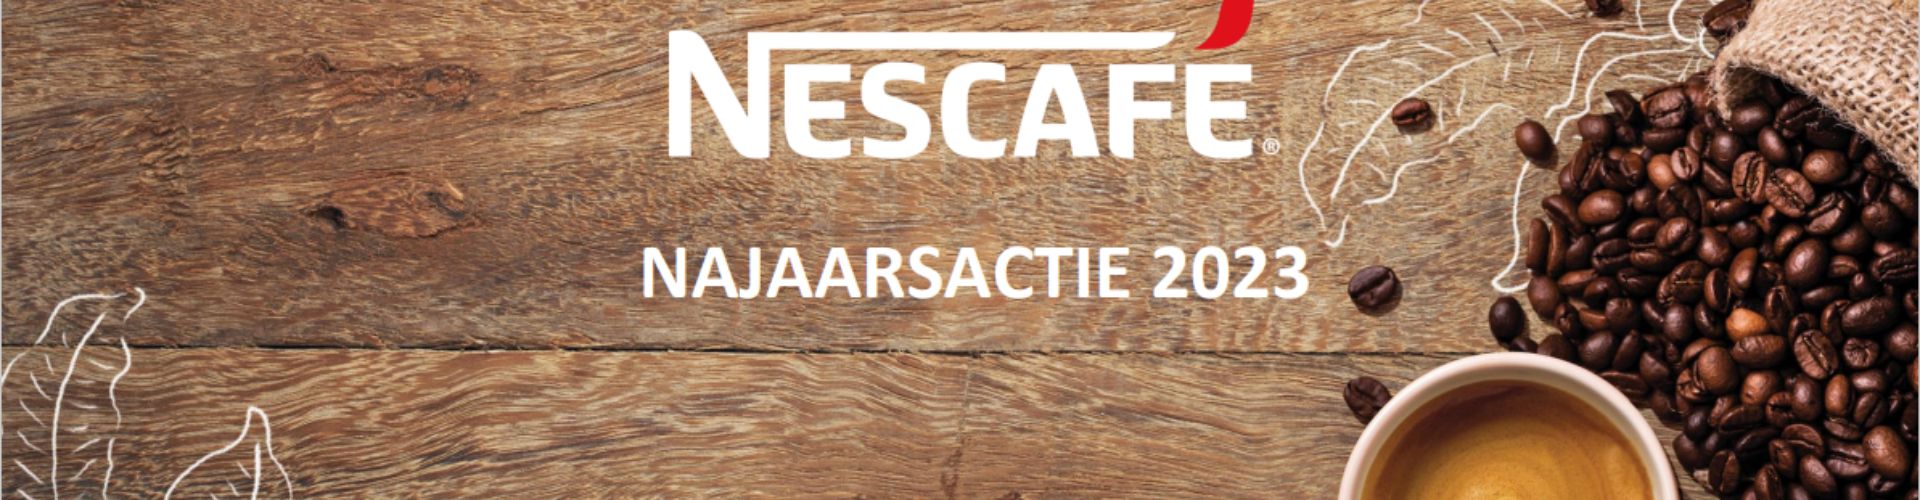 Nescafe najaarsactie 2023